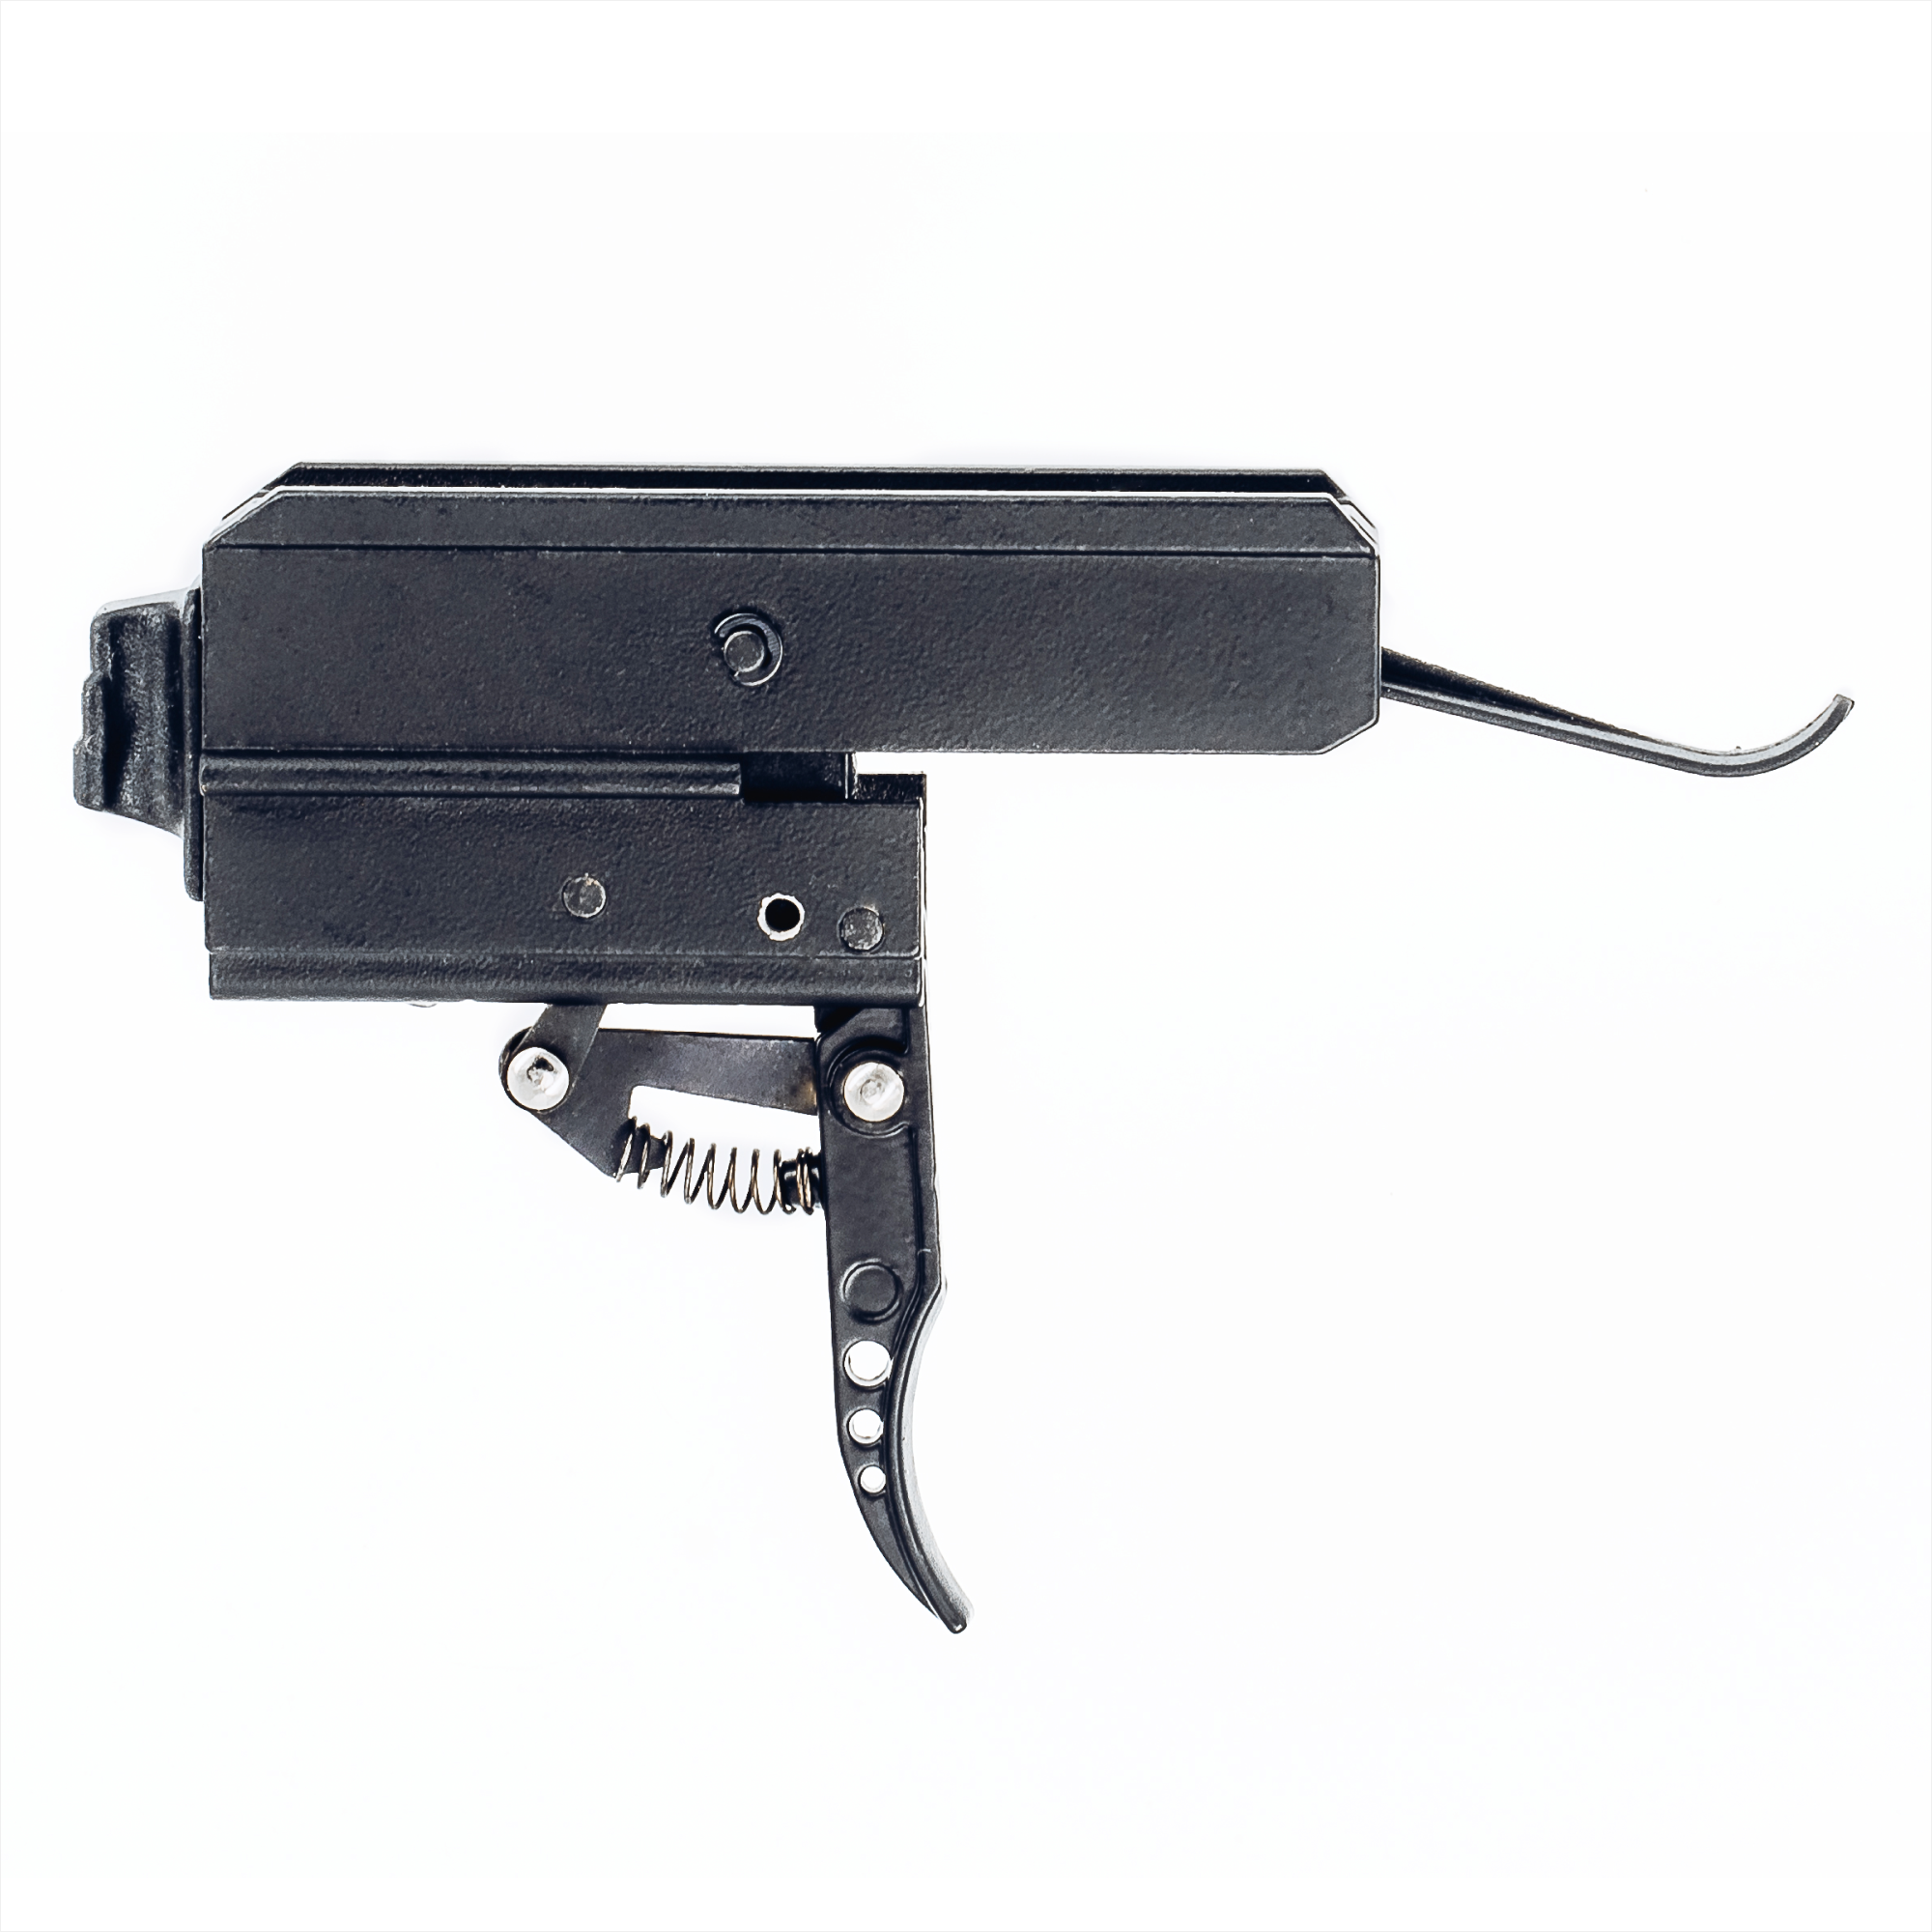 BALLISTA Trigger System for BALLISTA BAT Pistol Crossbow - BALLISTA